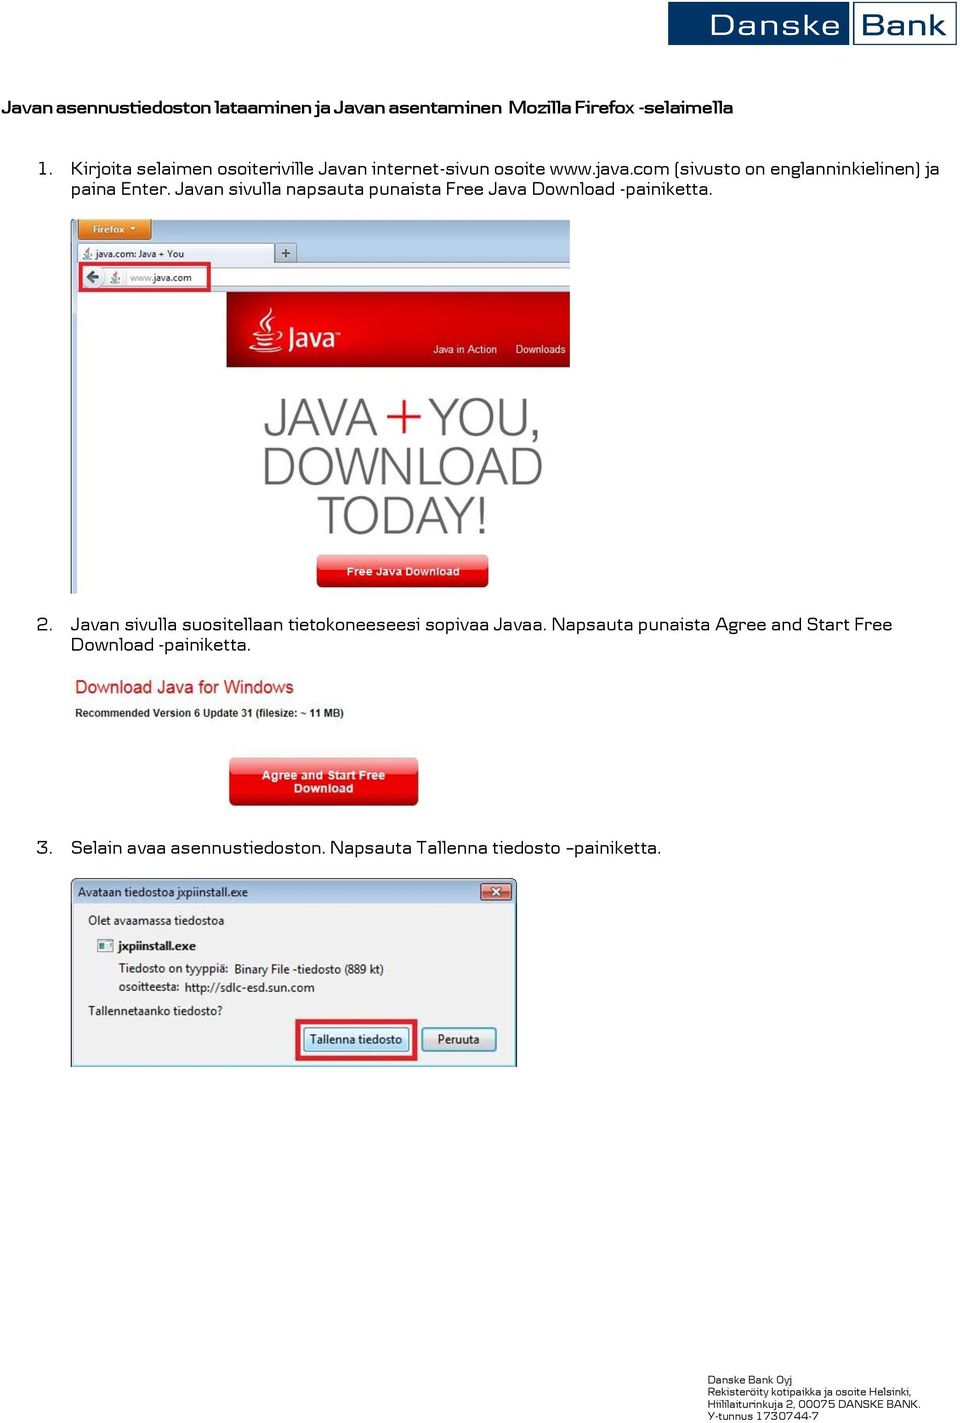 com (sivusto on englanninkielinen) ja paina Enter. Javan sivulla napsauta punaista Free Java Download -painiketta.